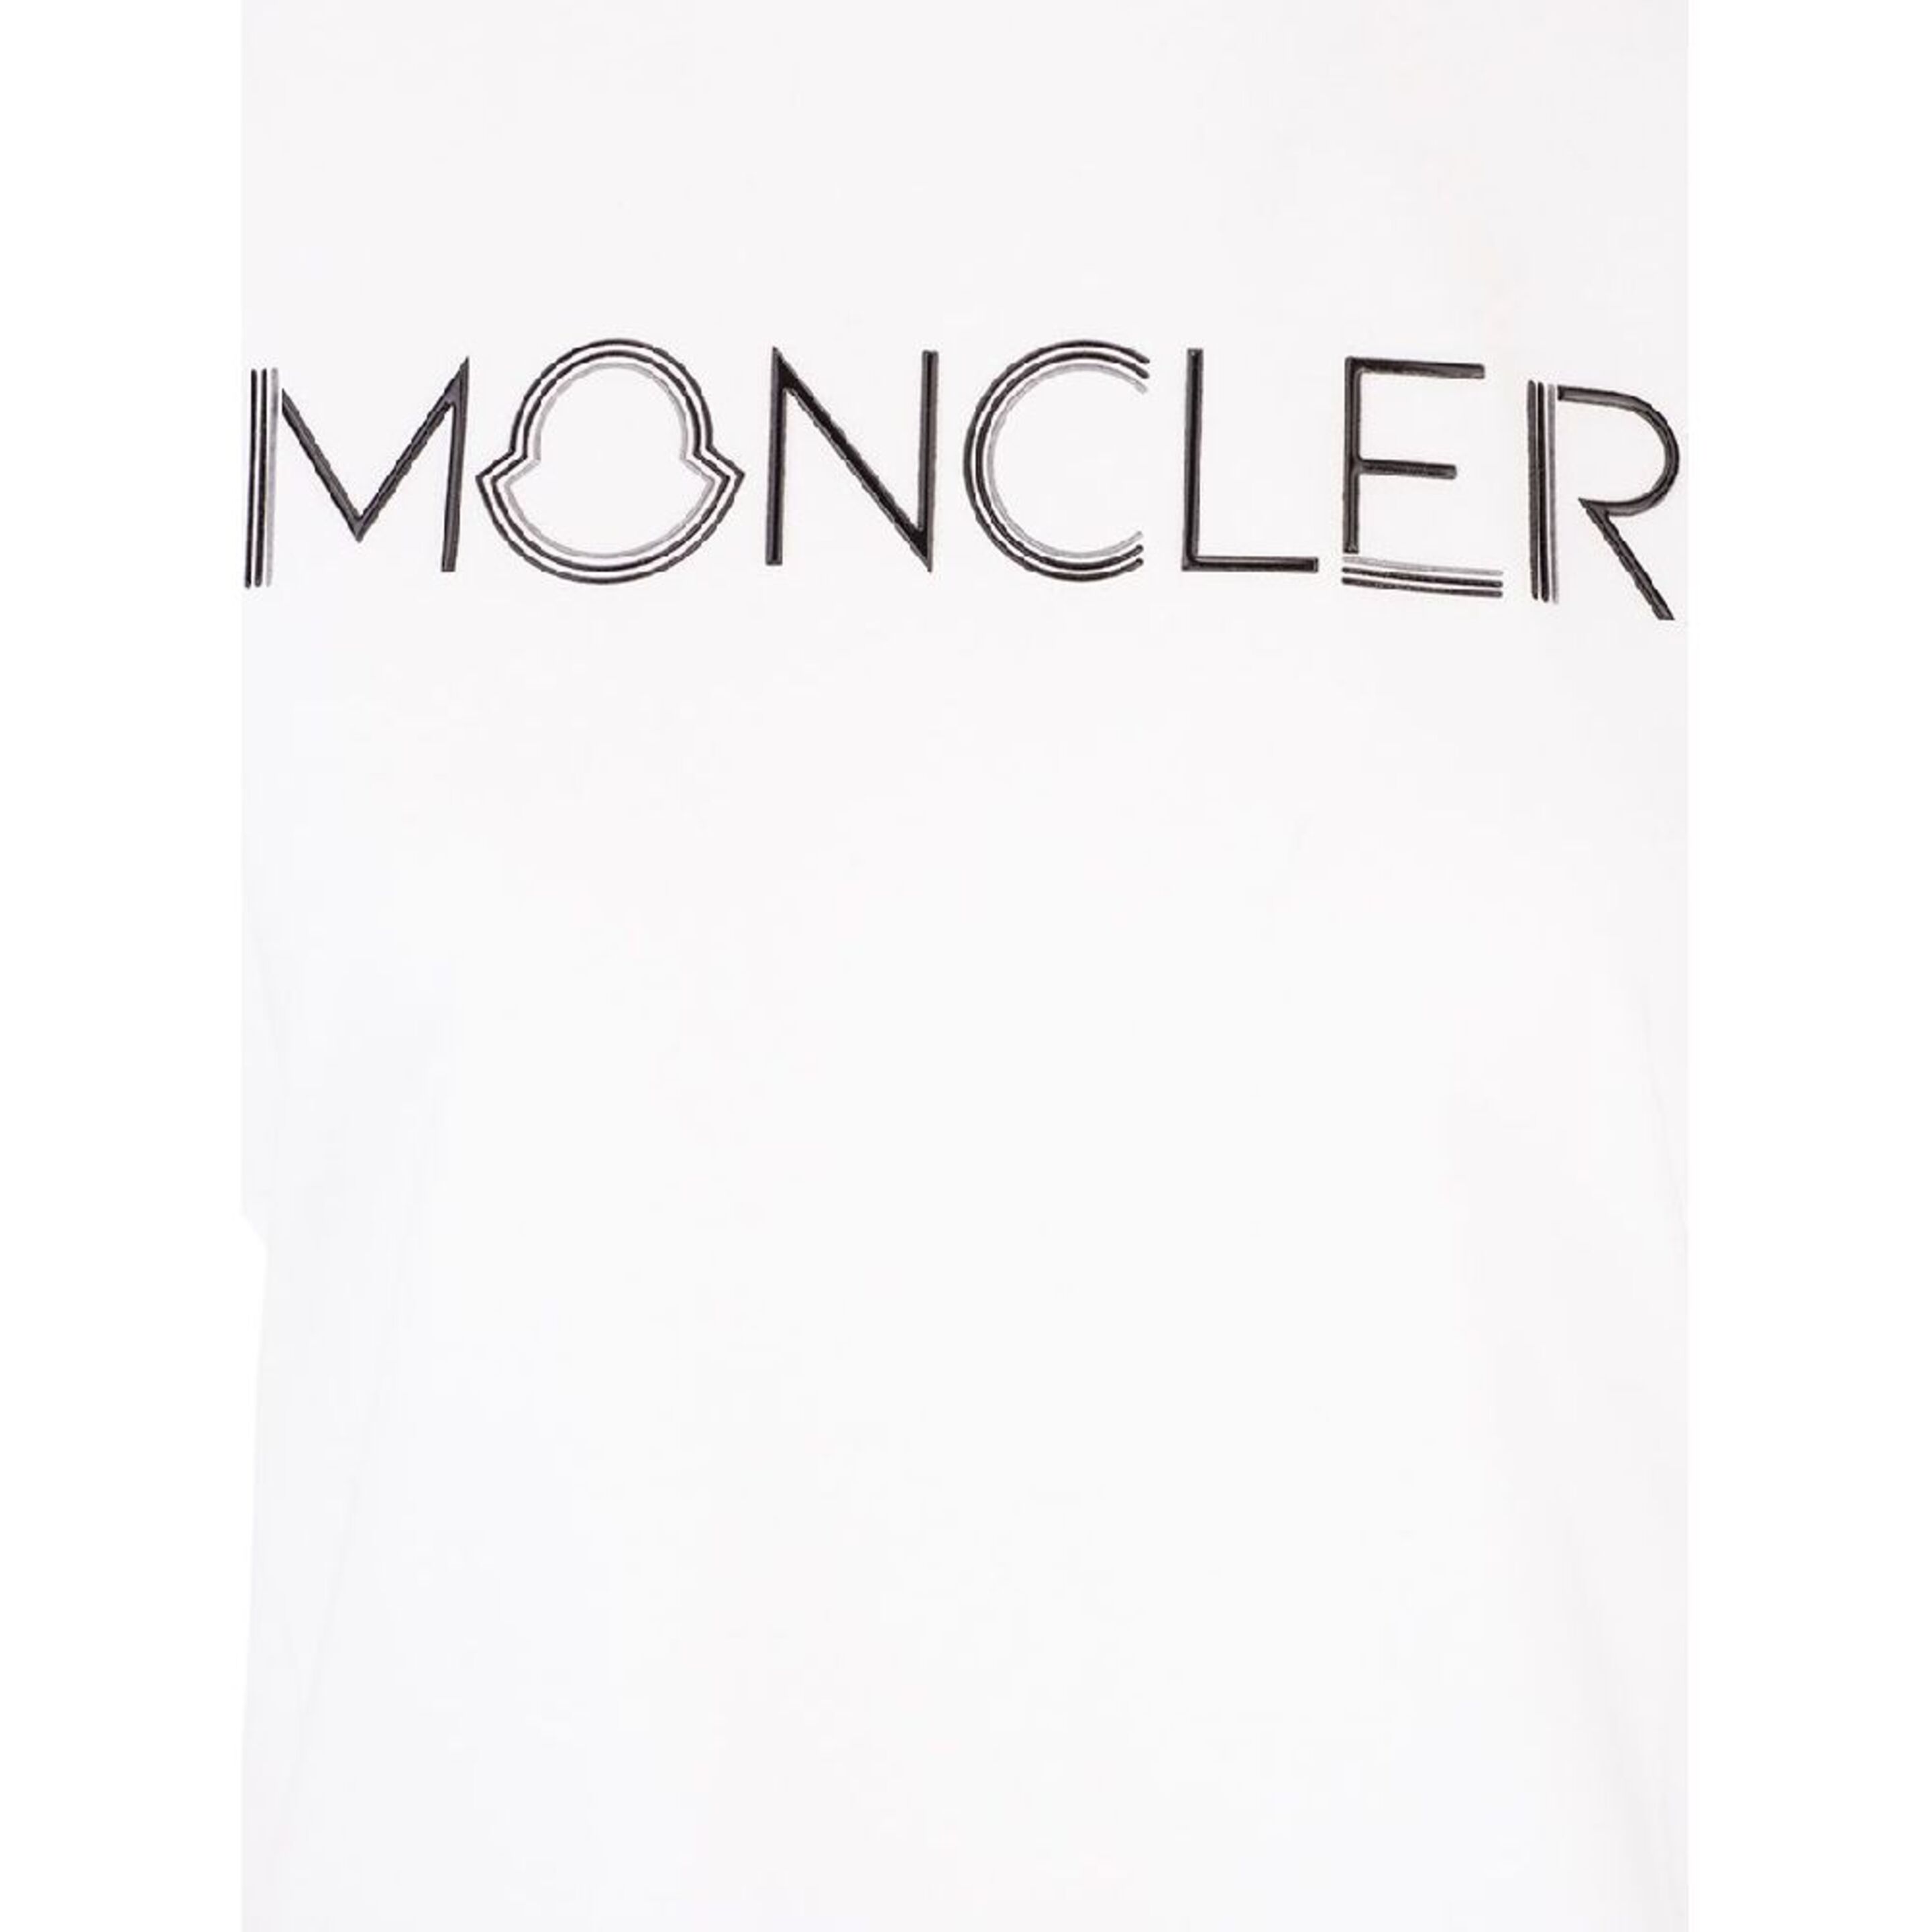 Camiseta Moncler Algodon